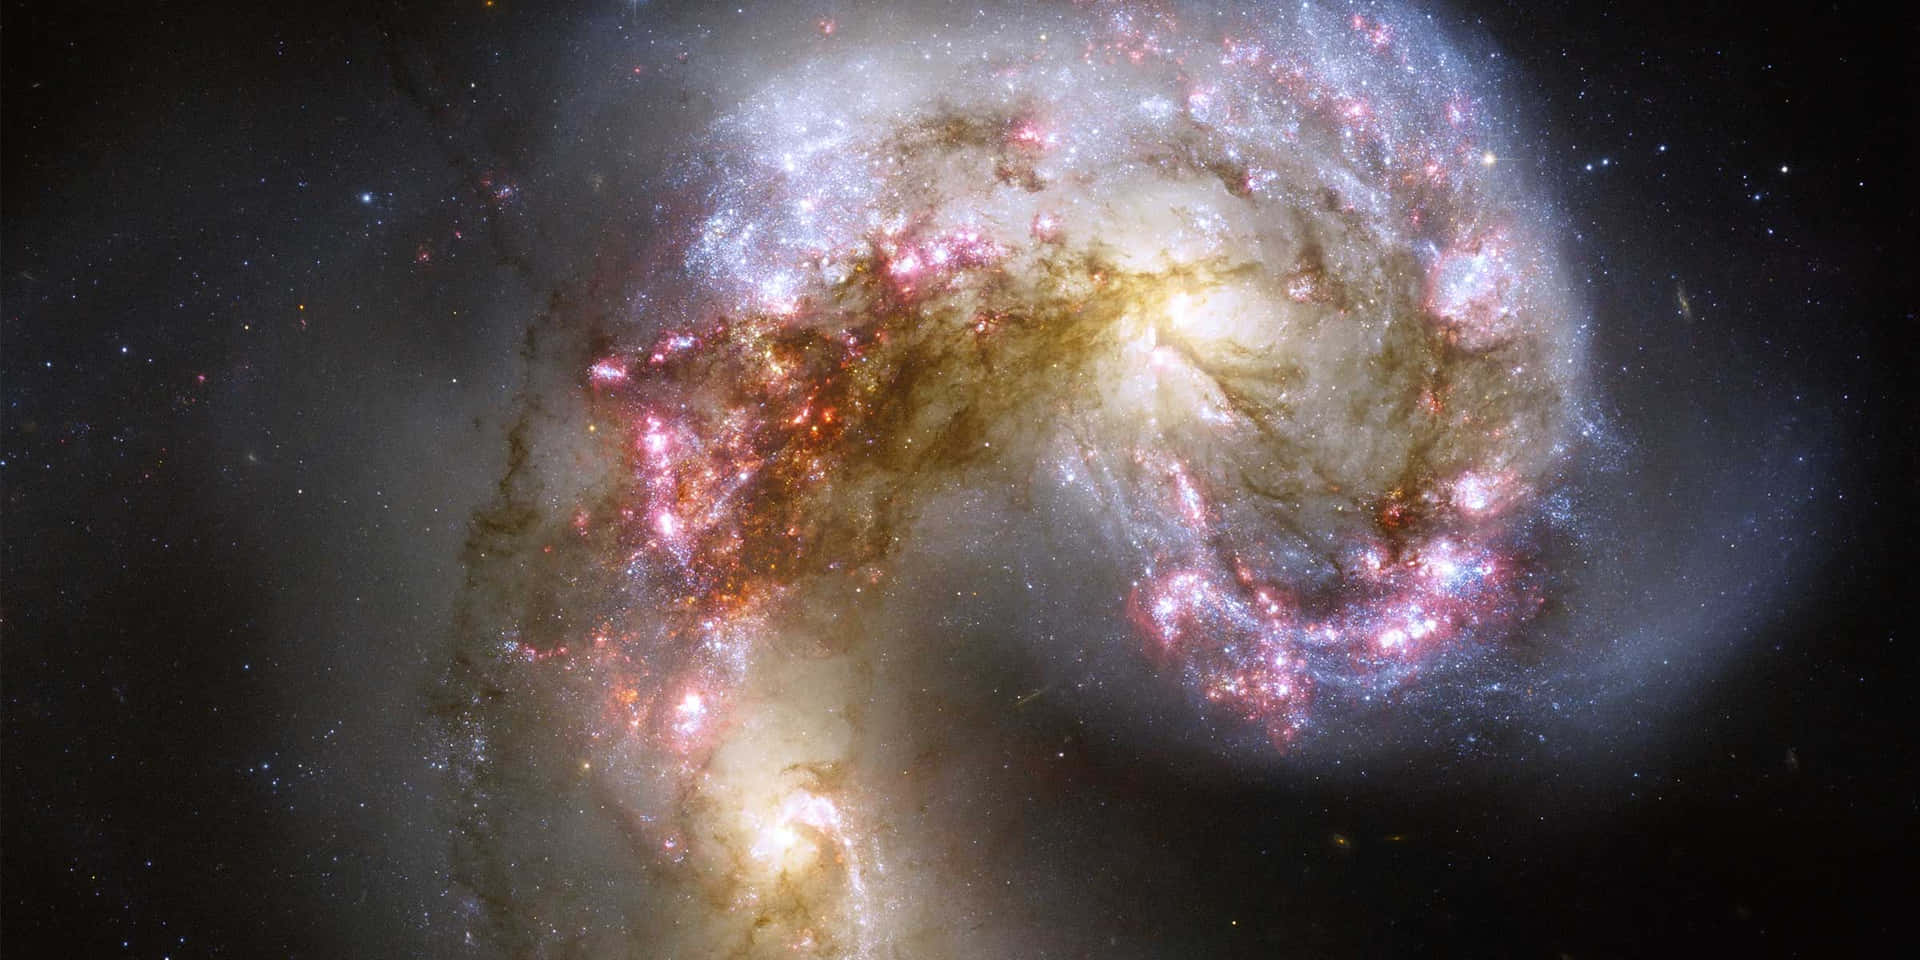 Billedeaf Imponerende Udsigt Over Galakser Fanget Af Hubble-teleskopet I Rummet Wallpaper